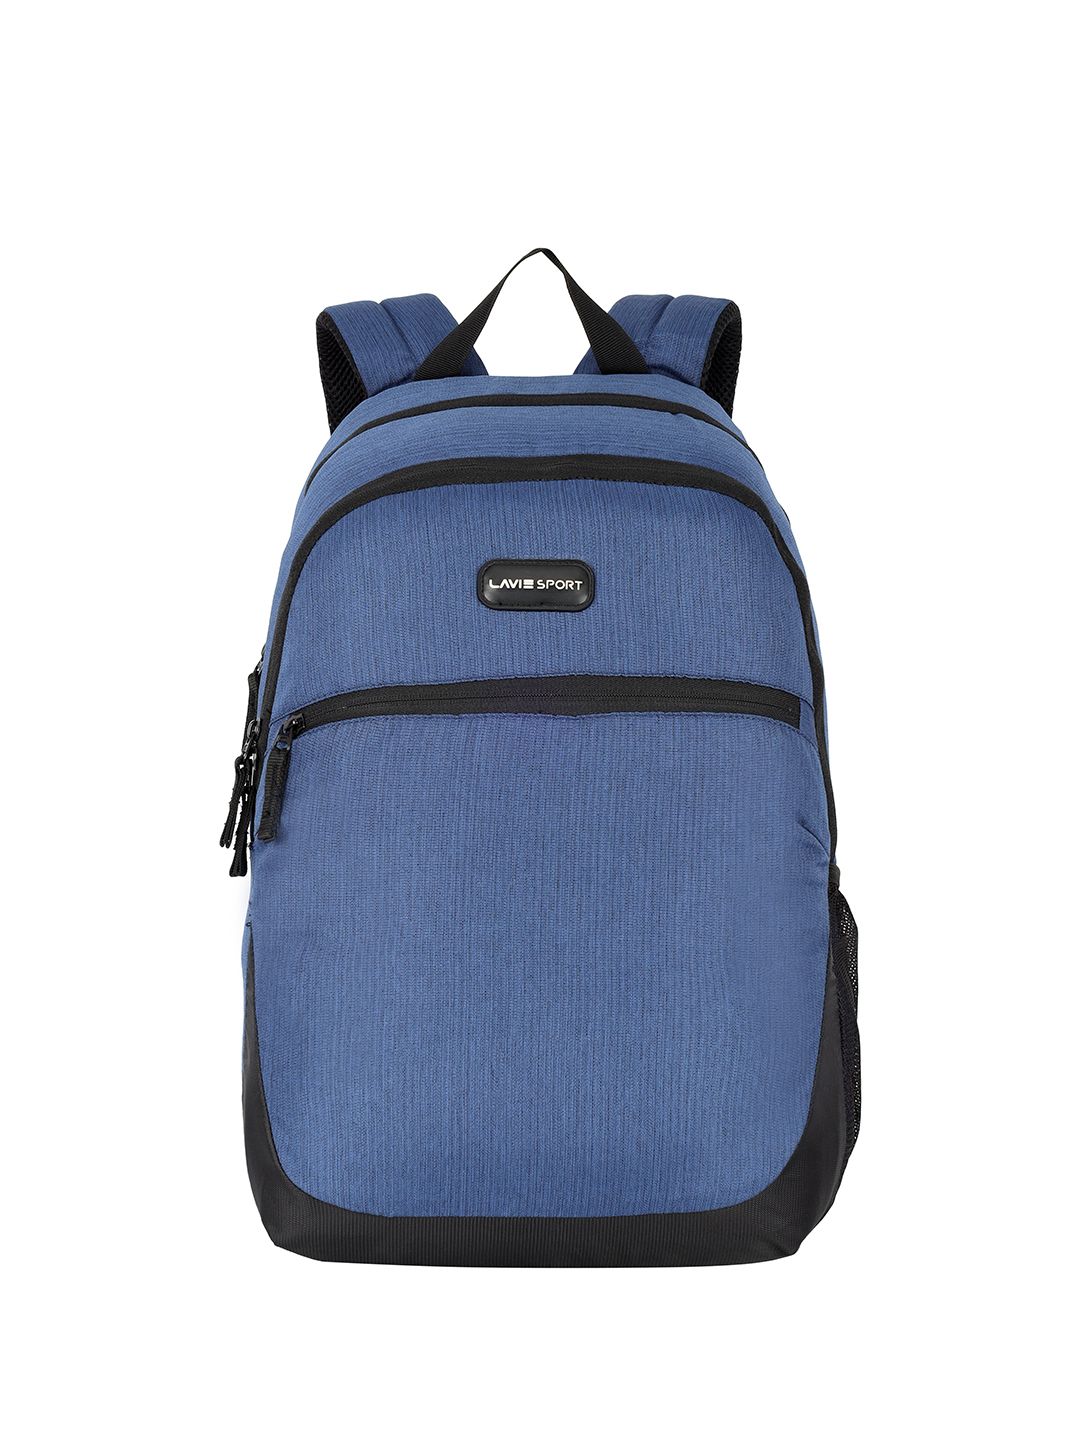 LAVIE SPORT Unisex Laptop Backpack